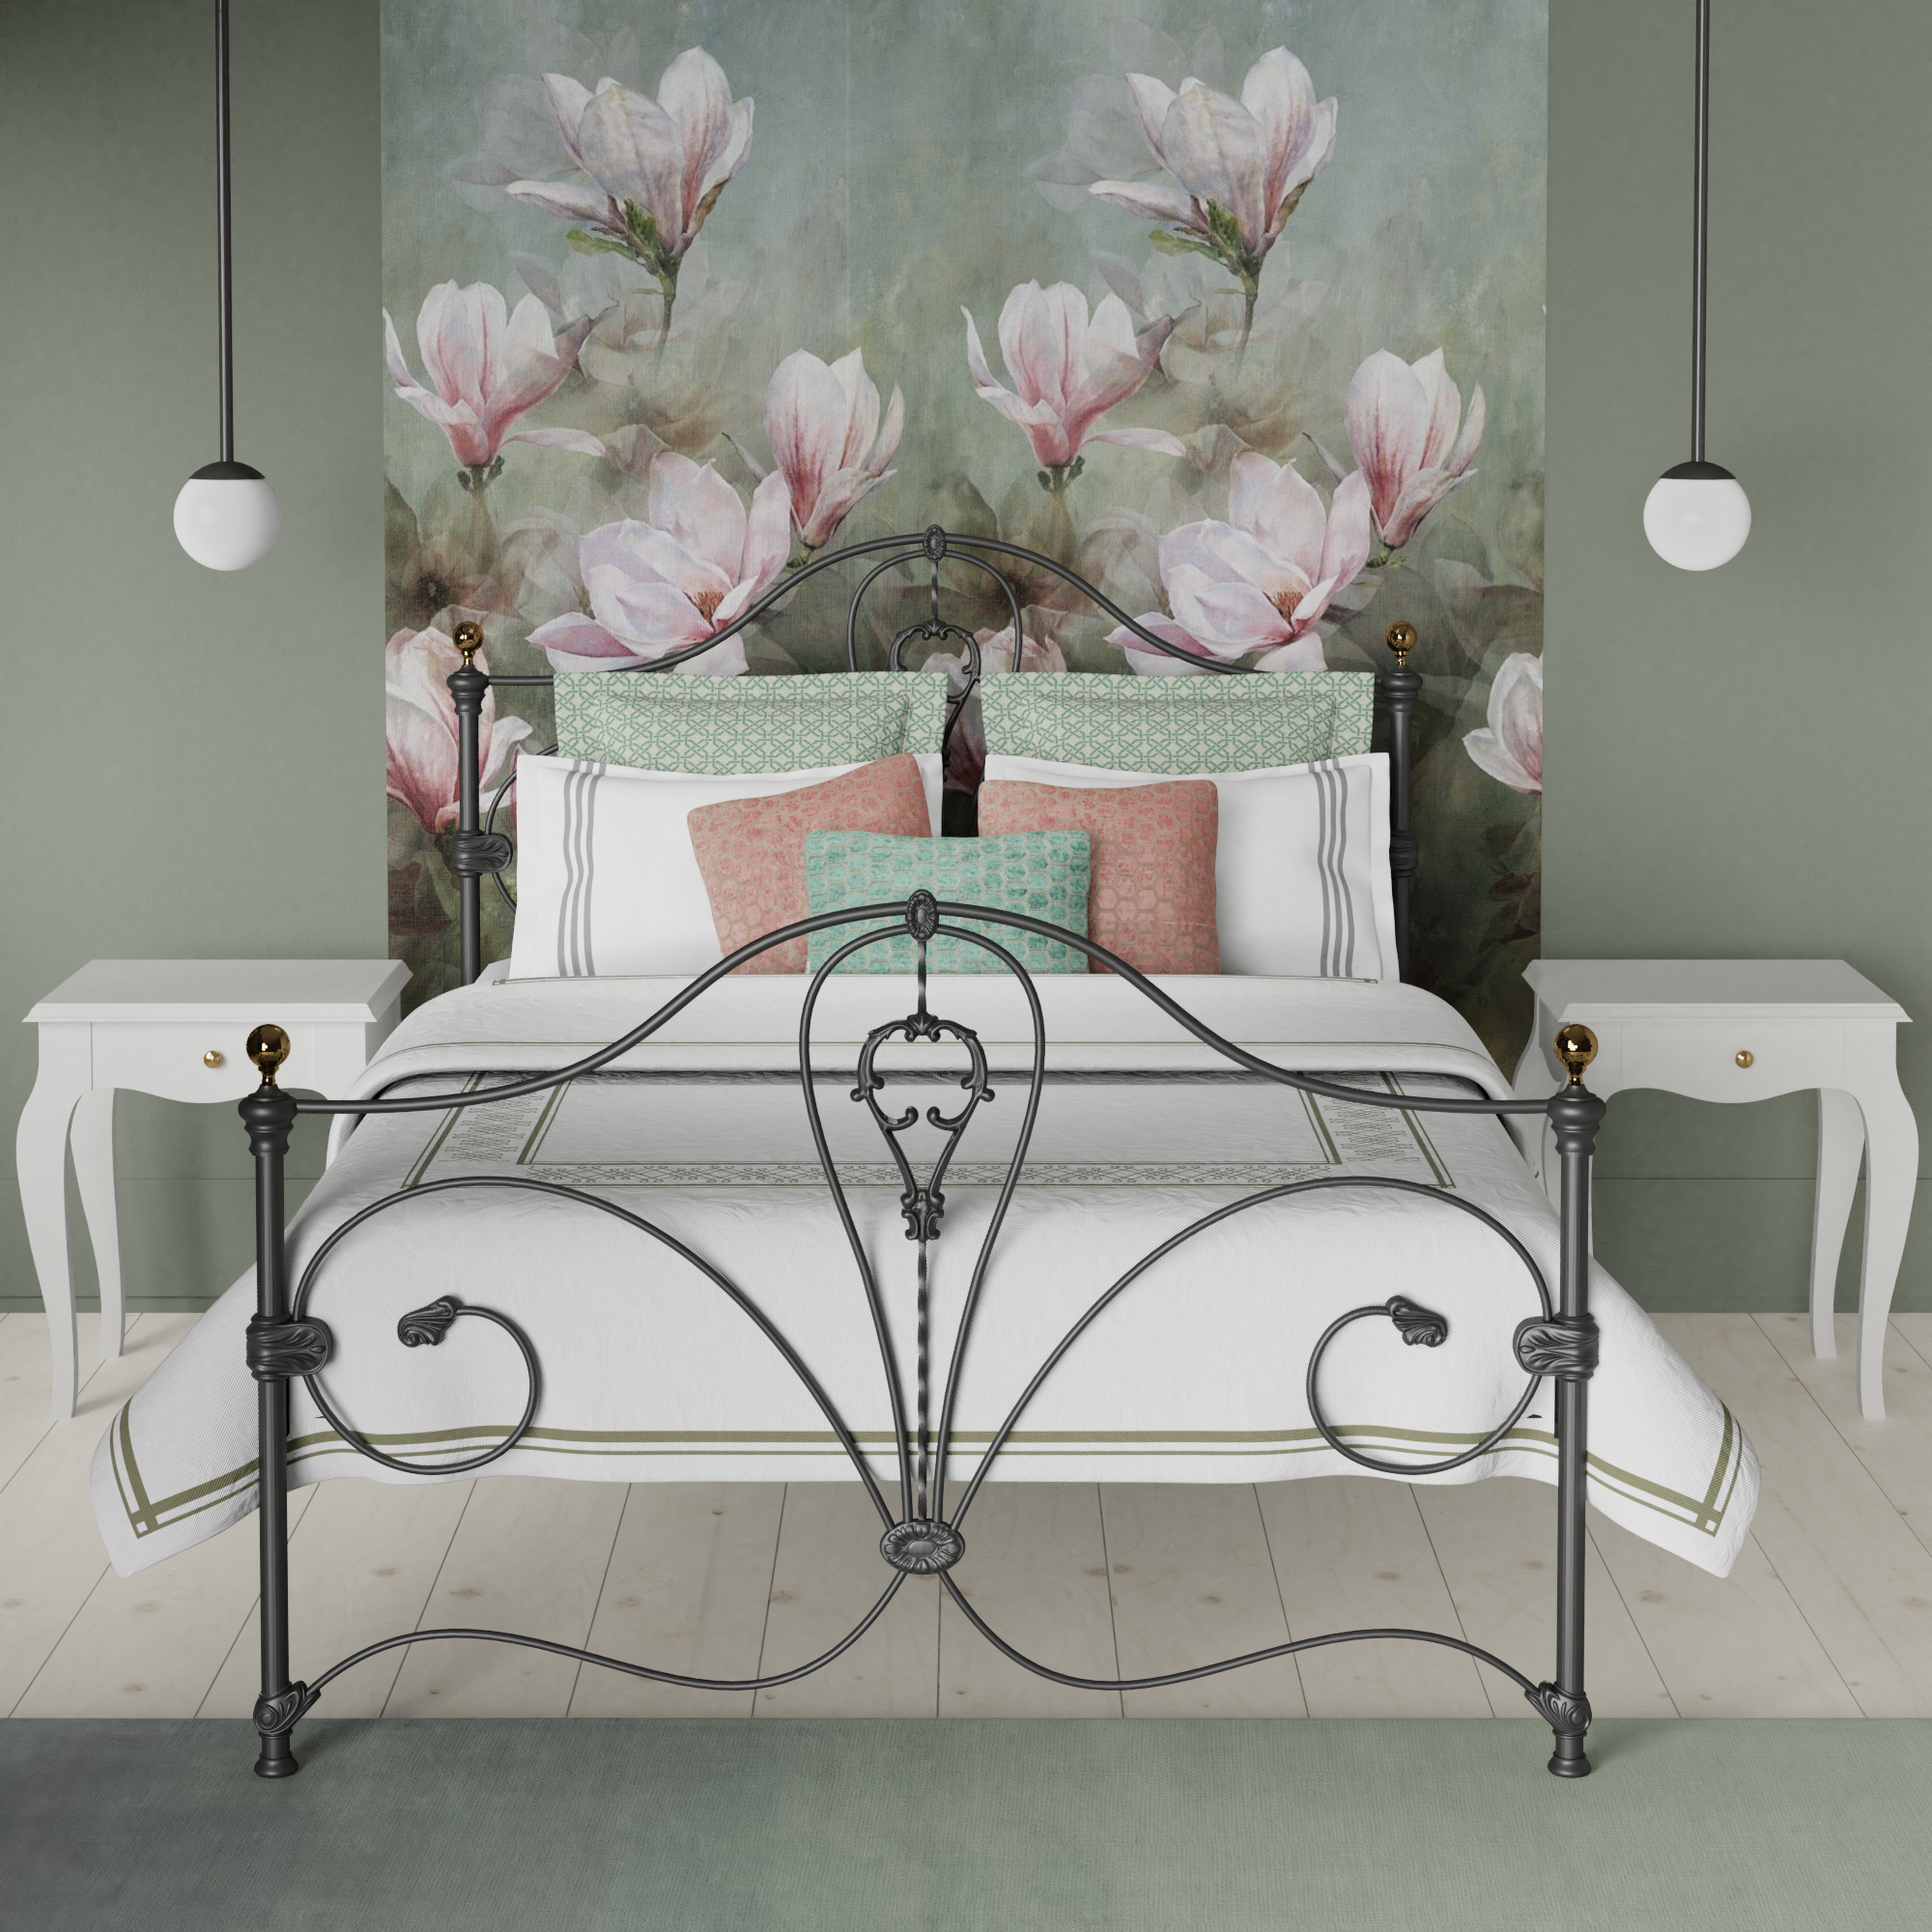 Melrose iron bed - Image spring